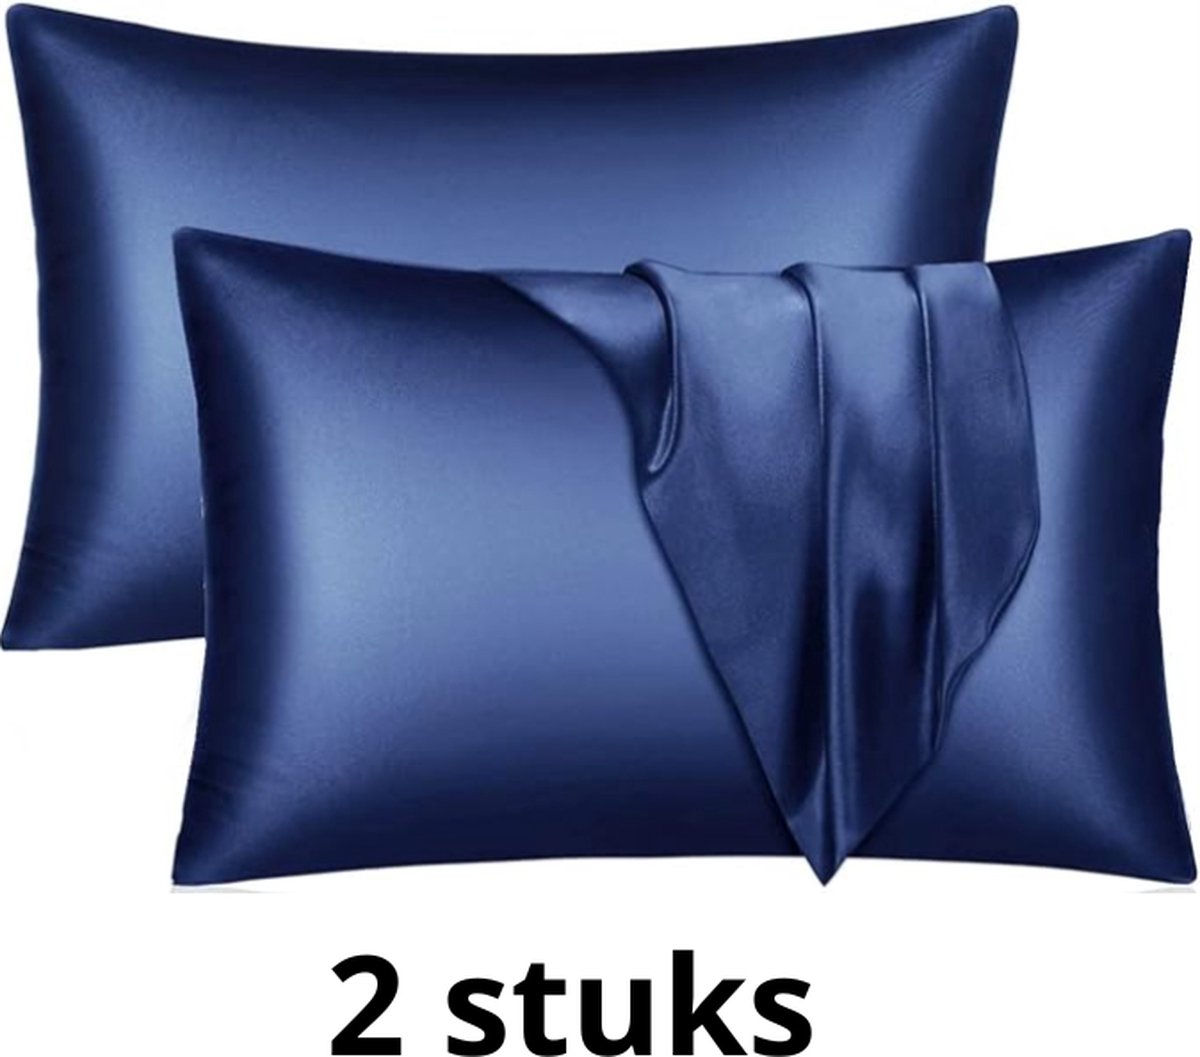 Satijnen kussensloop - set van 2 kussenslopen - Skin & Hair Pillow sleeve - Marineblauw 51x66cm- Beauty kussen - zijden kussensloop - Huidverzorging - Haarverzorging - Anti Allergeen - Navy blauw- zijden kussensloop - Beauty kapsel sloop